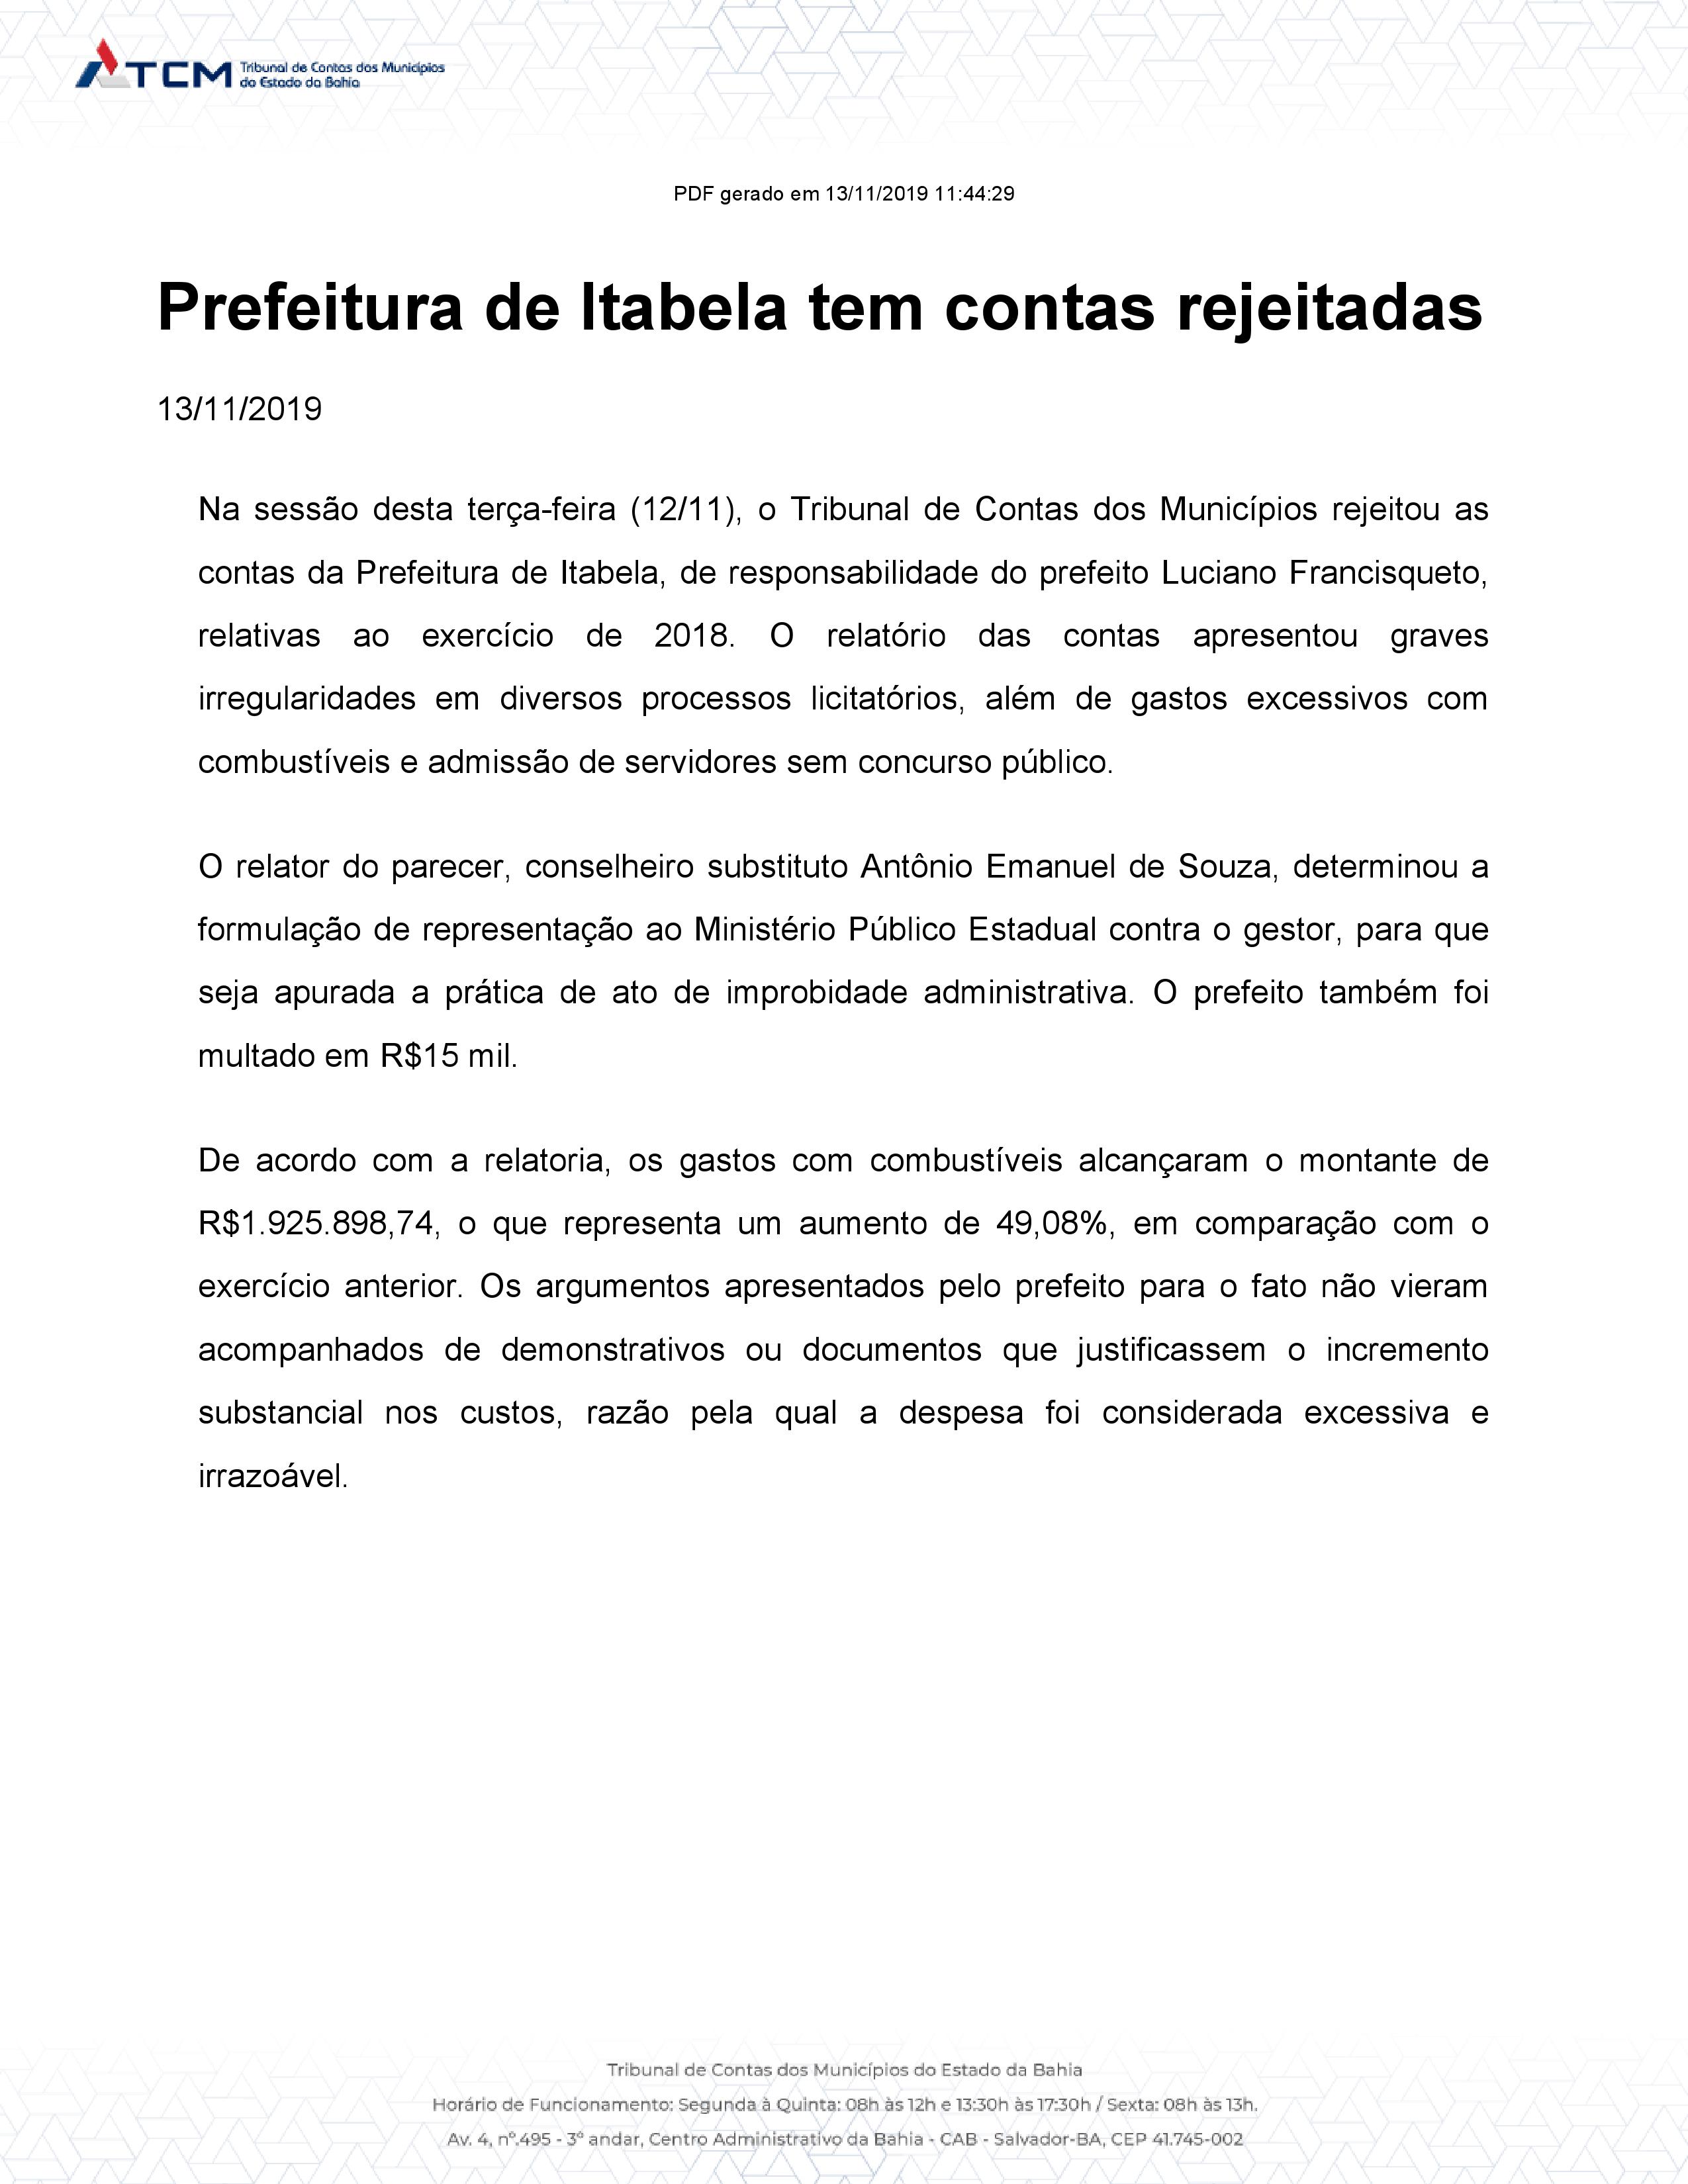 Prefeitura de Itabela tem contas rejeitadas pelo o TCM das contas de 2018 6